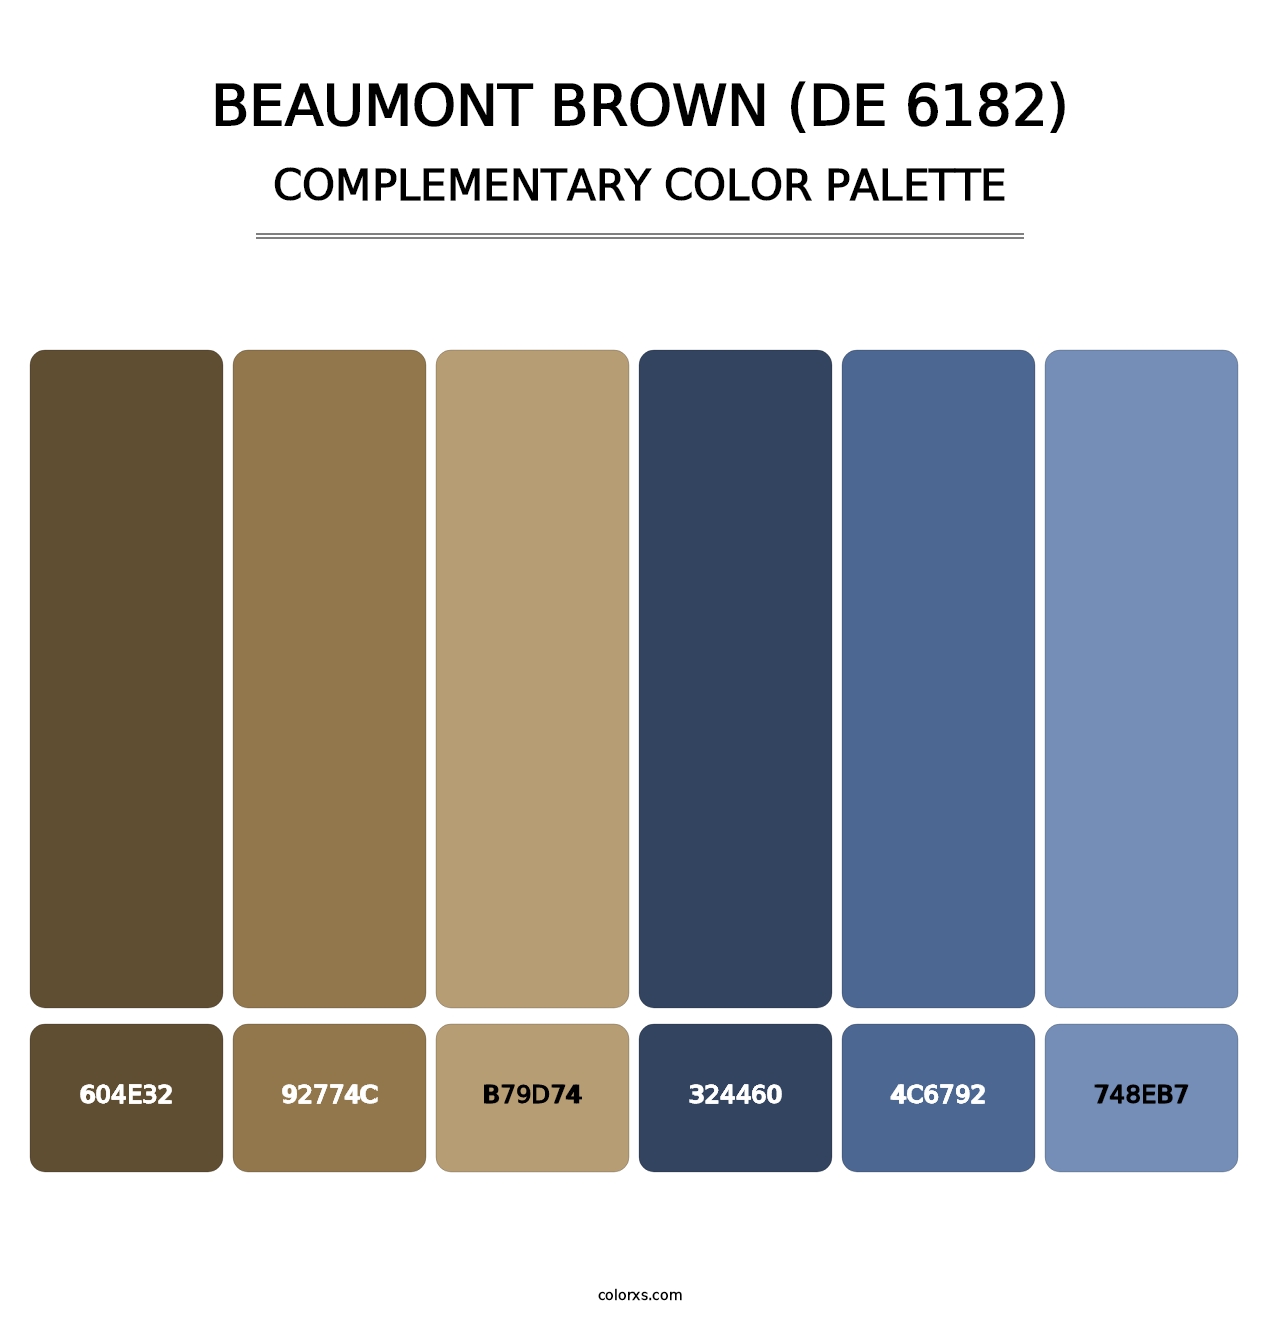 Beaumont Brown (DE 6182) - Complementary Color Palette